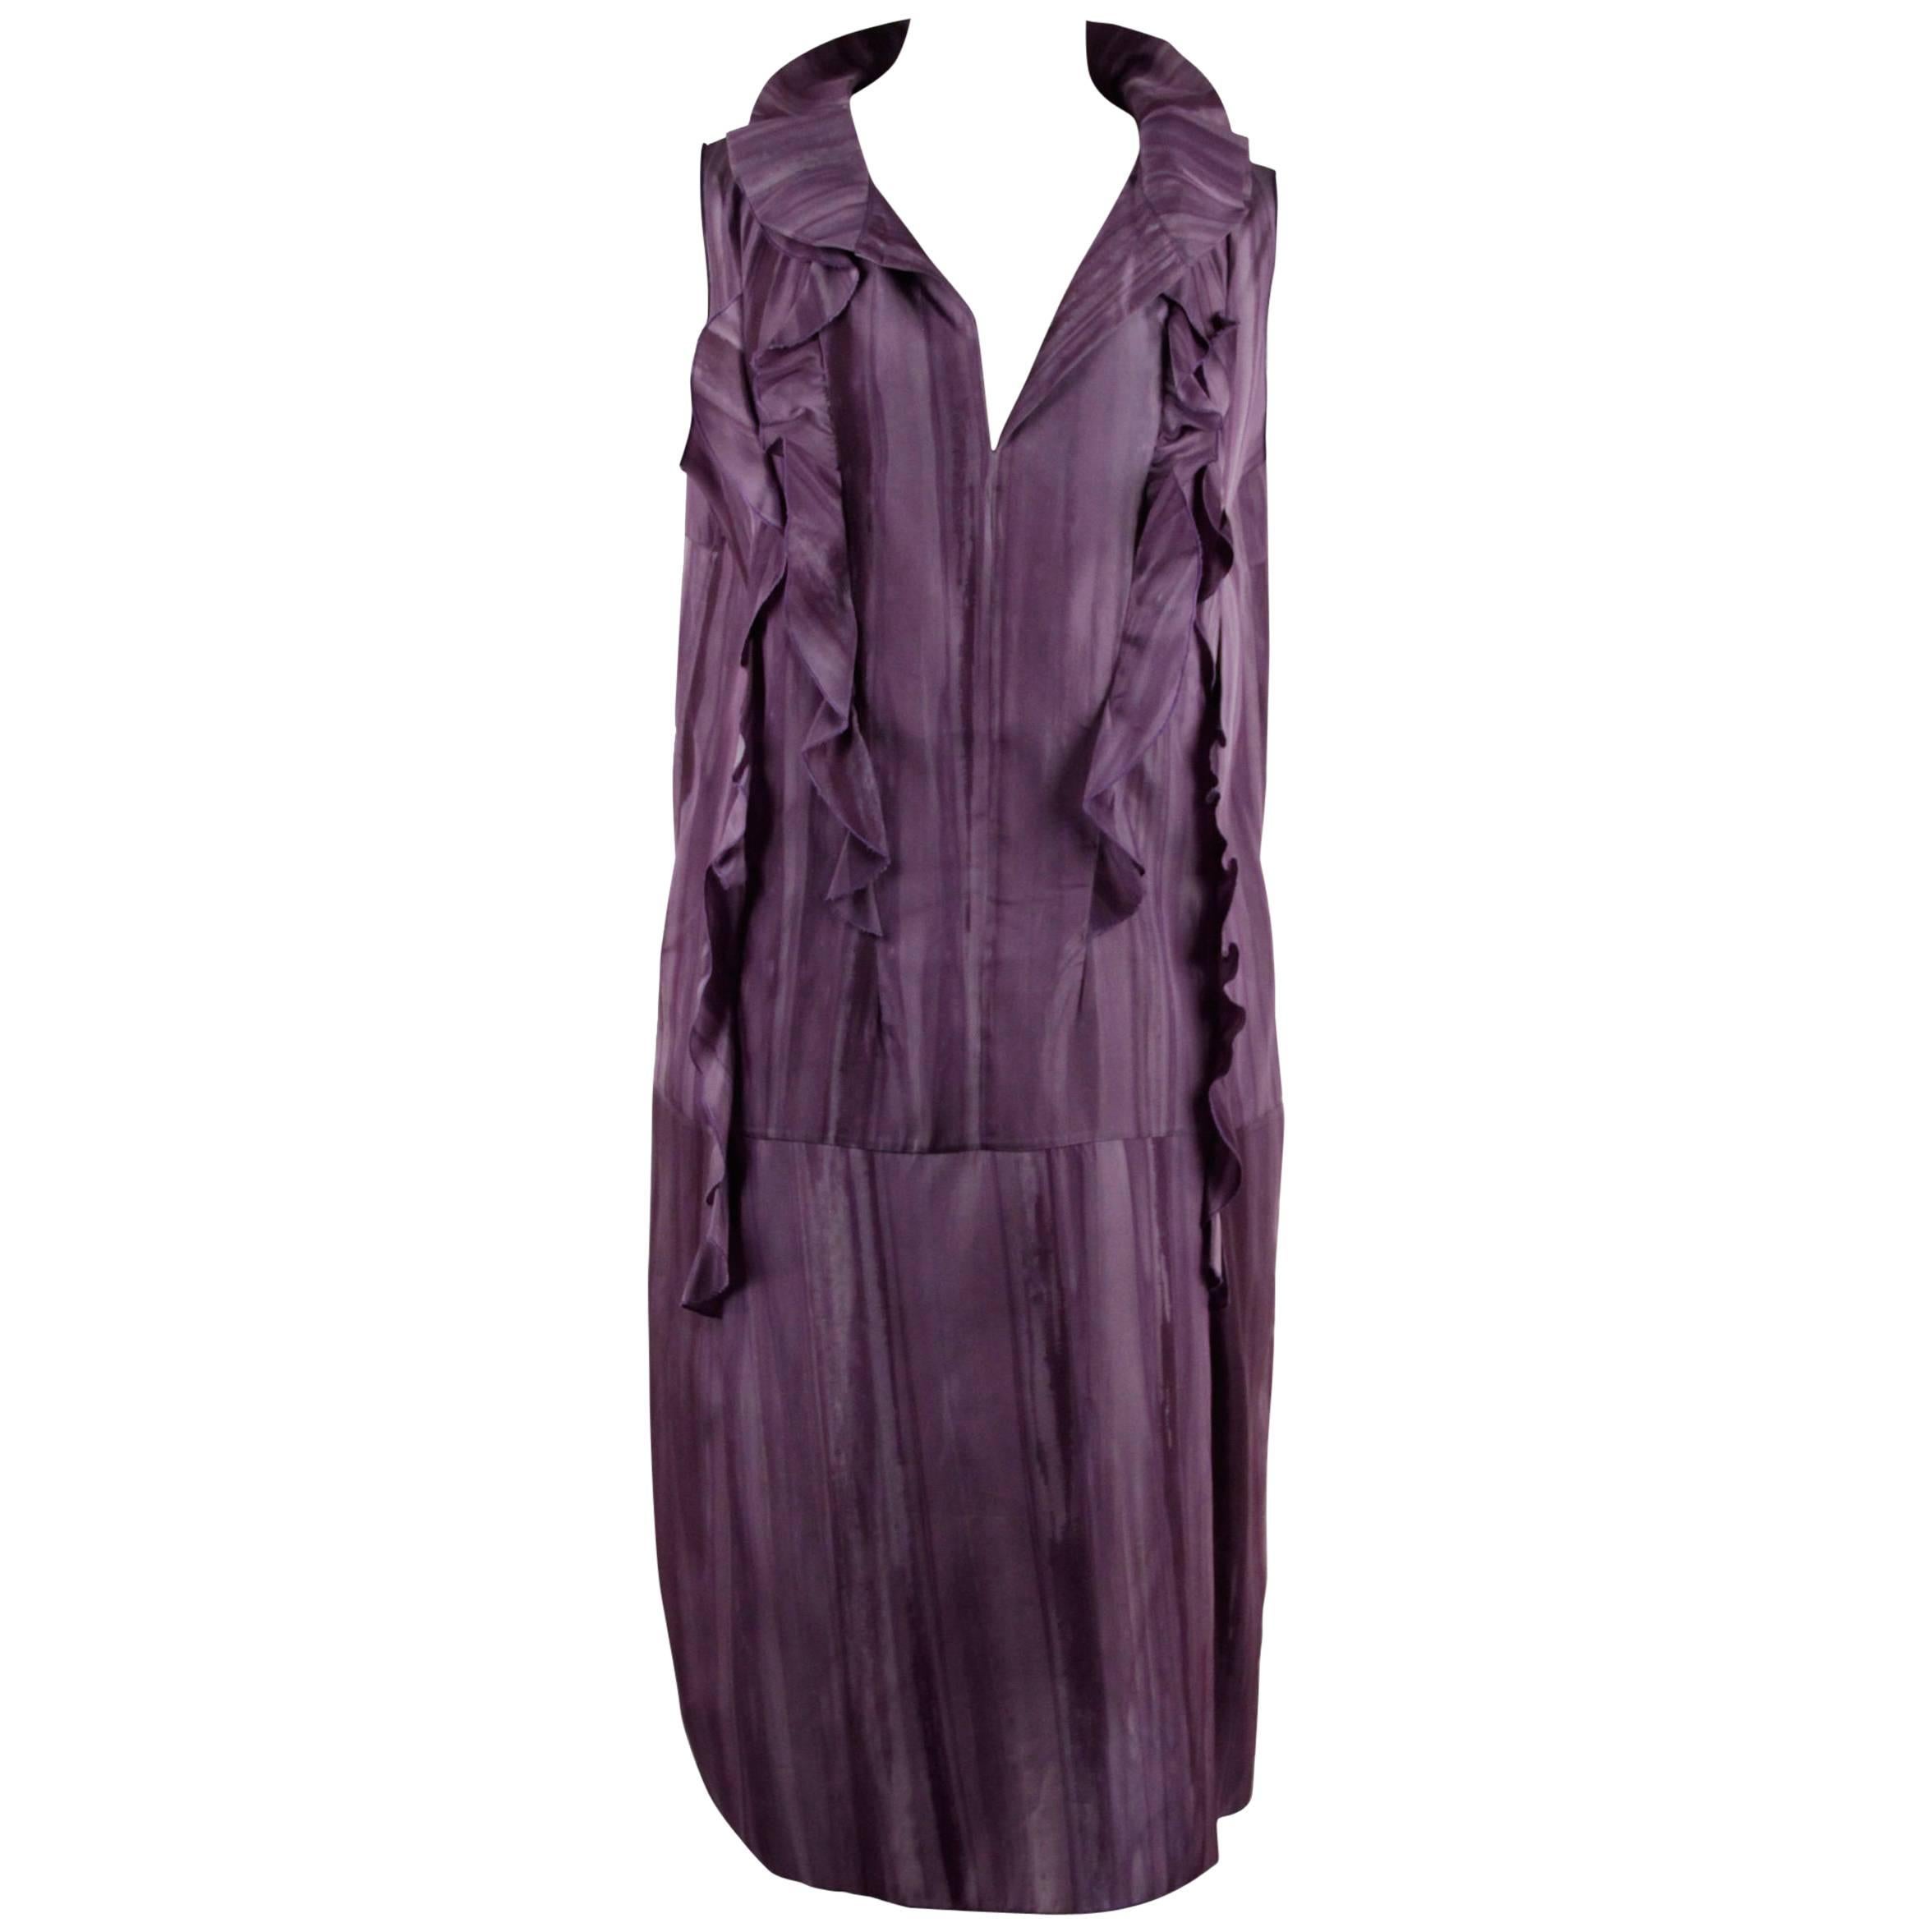 Marni Purple Silky Sleeveless Dress with Ruffles Size 42